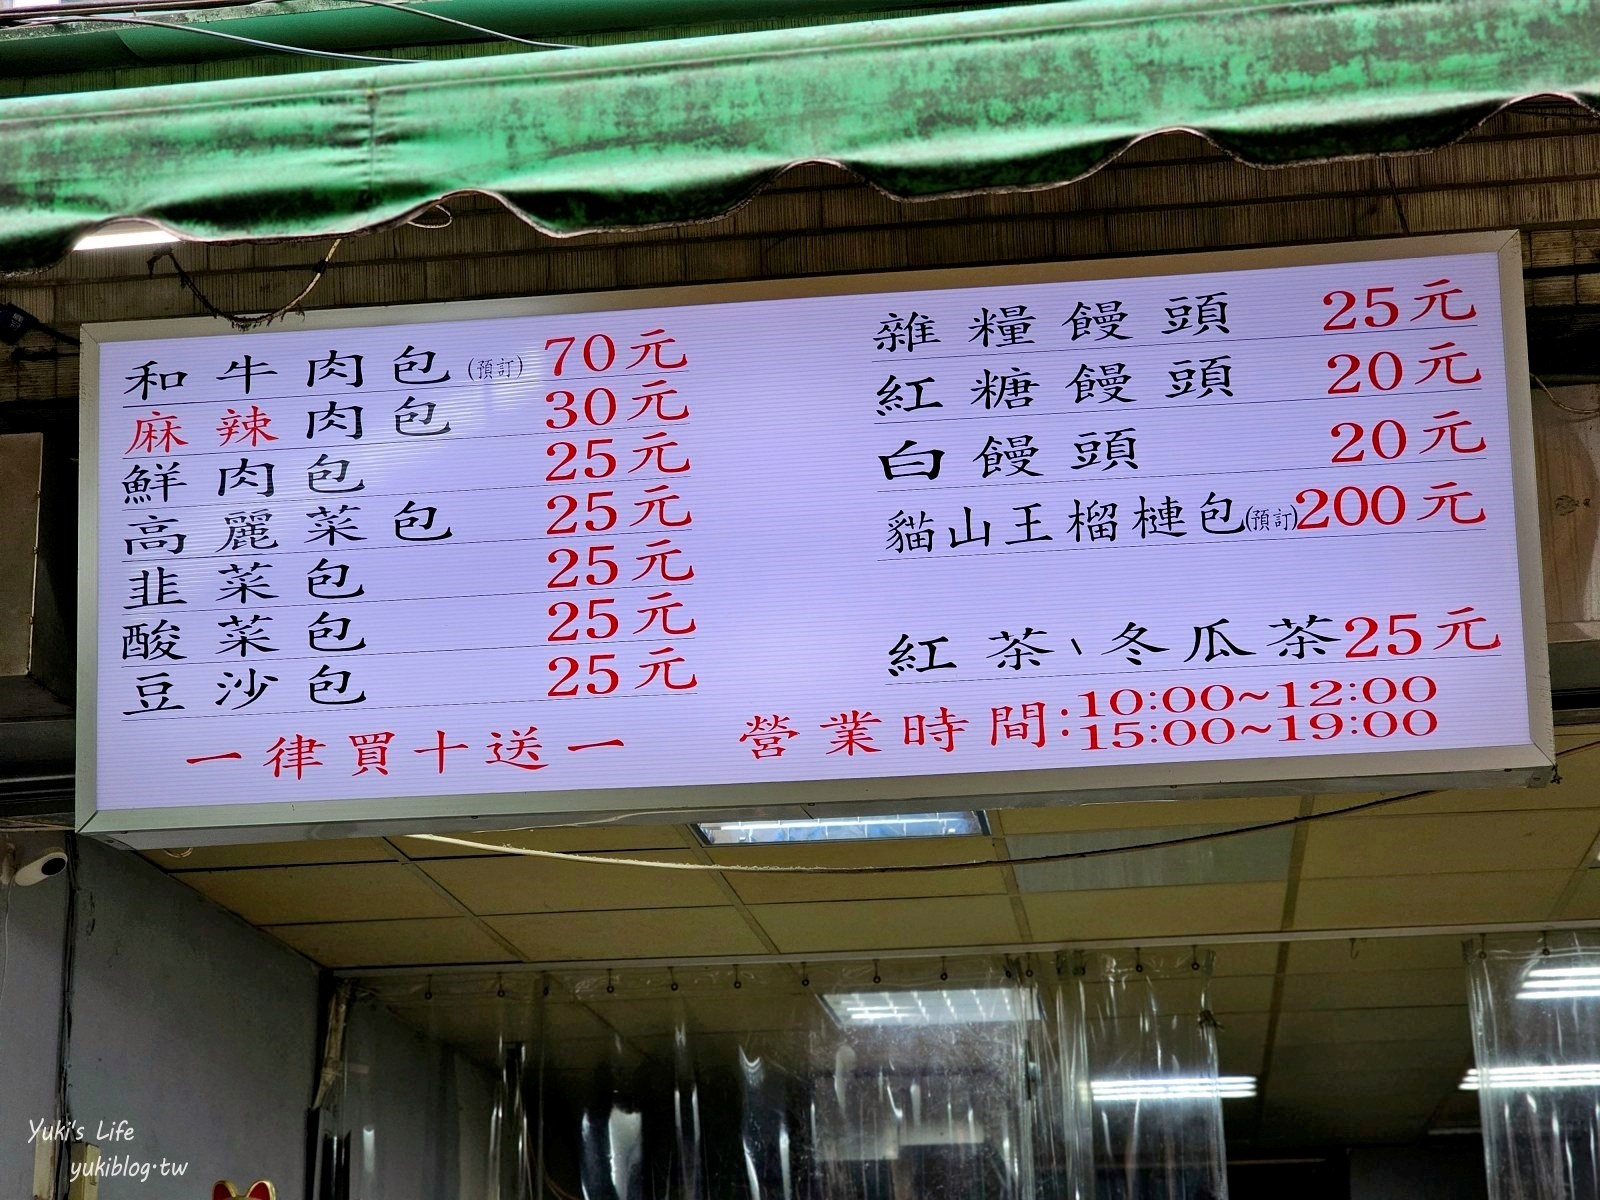 台北銅板小吃美食│老上海包子│虎林街市場A5和牛肉包好狂(菜單價格) - yukiblog.tw